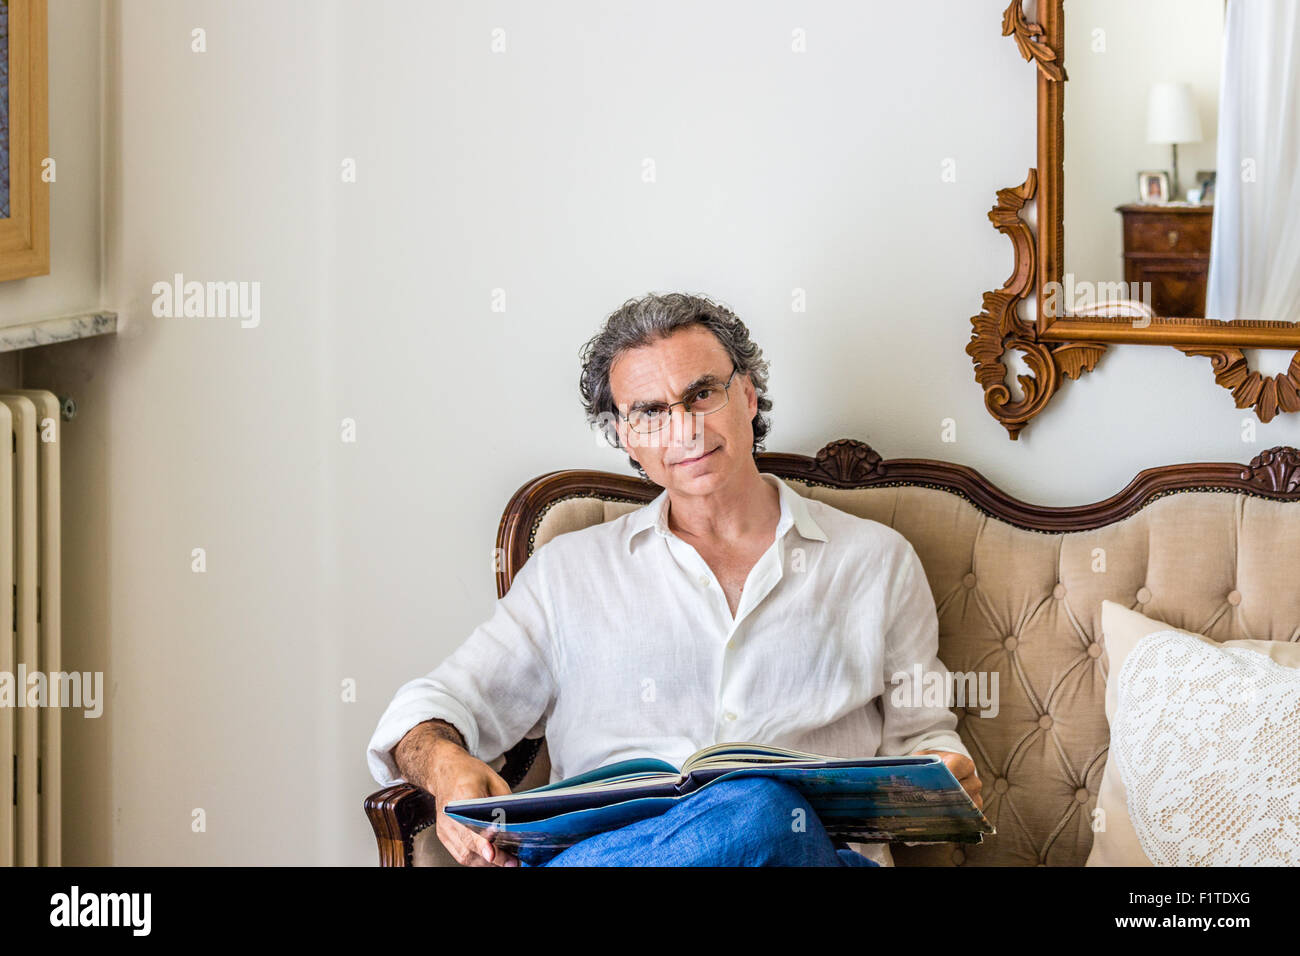 faszinierende vierziger ist Mann raffiniert und doch sportlich gekleidet eine Brille und einen Foto-Bildband über ein gepolstertes Sofa in eine helle und luxuriöse Wohnzimmer beobachten Stockfoto